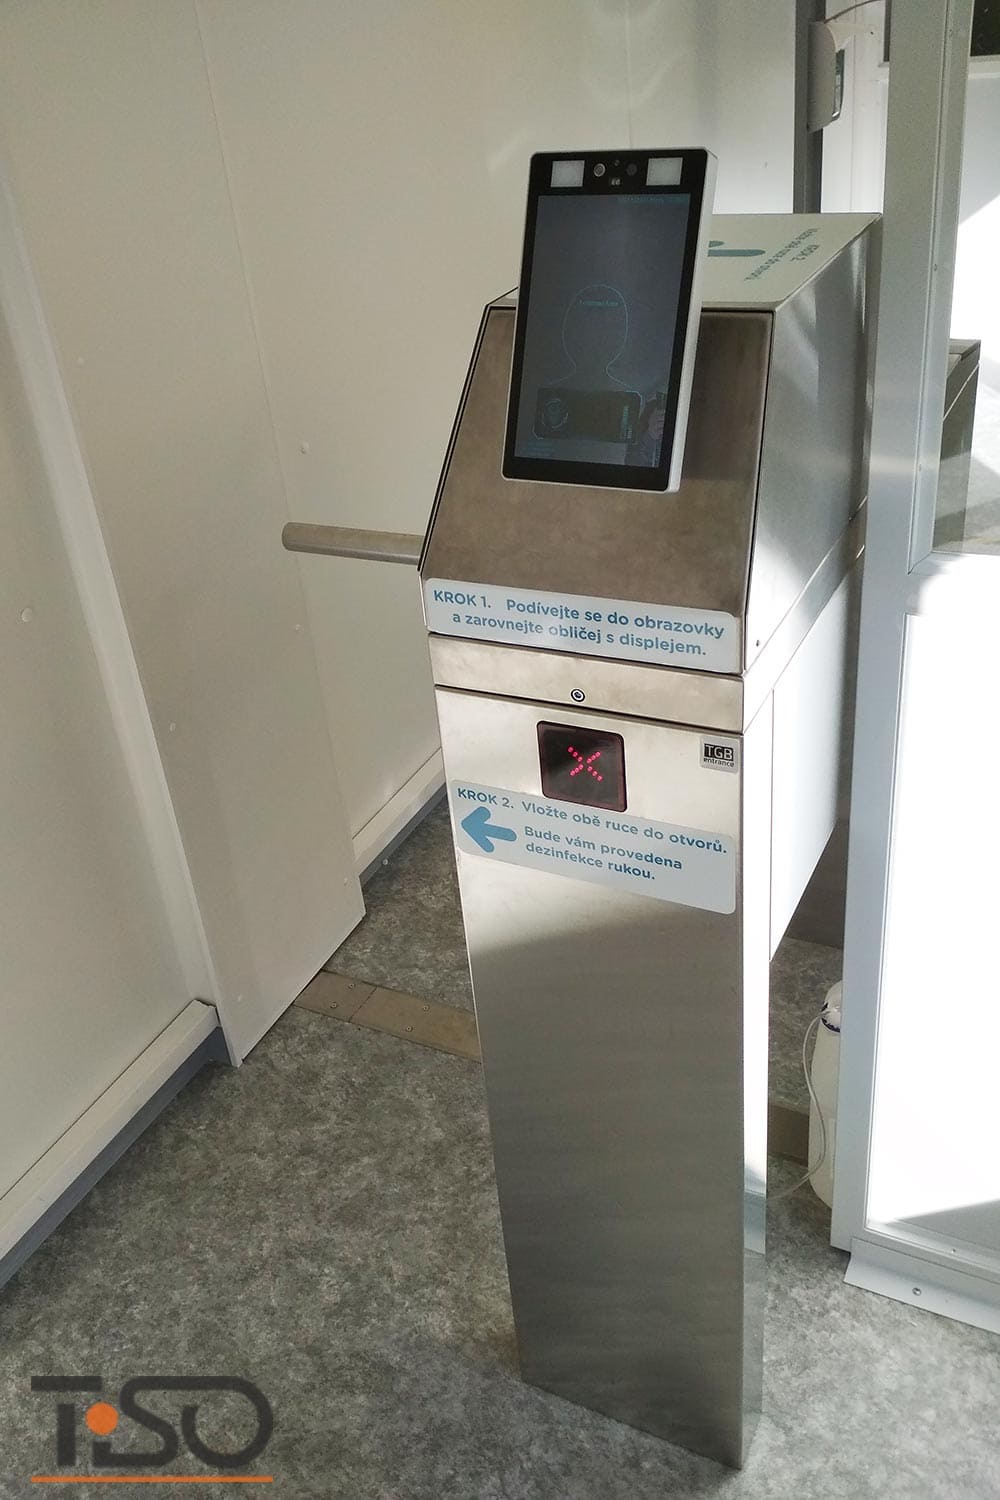 Twix-M y sistema automático de desinfección de manos, hospital Horovice, República Checa